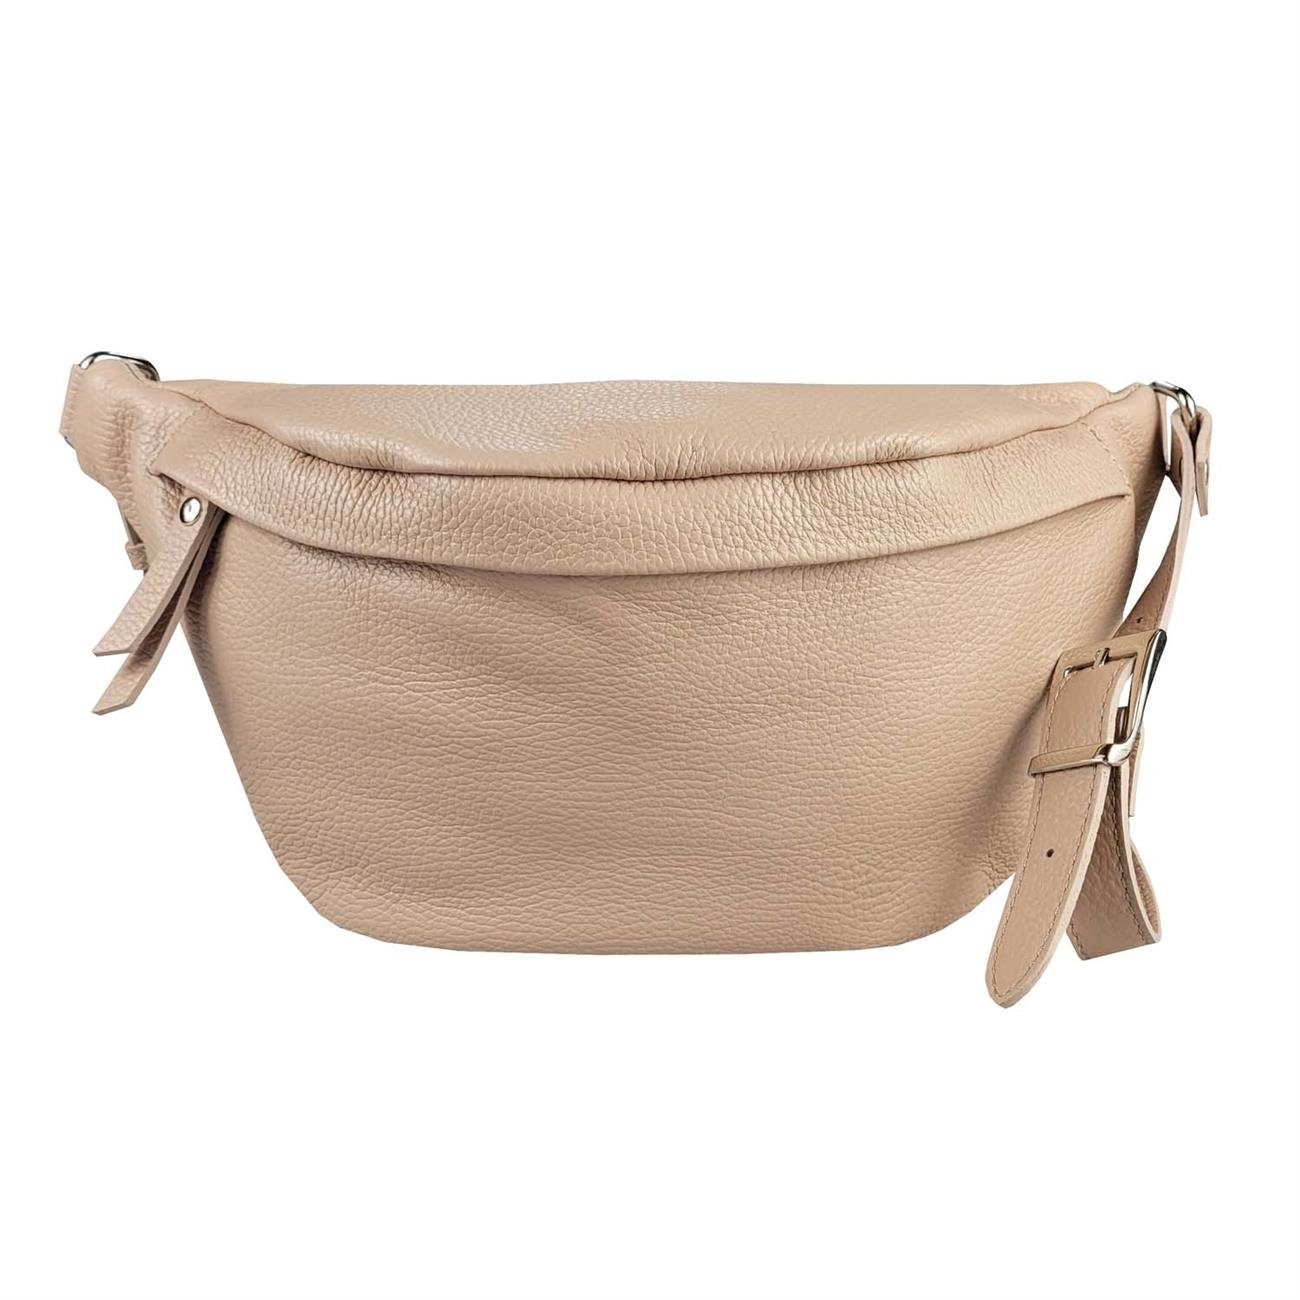 ITALYSHOP24 Bauchtasche Damen Leder Gürteltasche Hüfttasche CrossBody Brusttasche, als Schultertasche, Bodybag, Umhängetasche tragbar